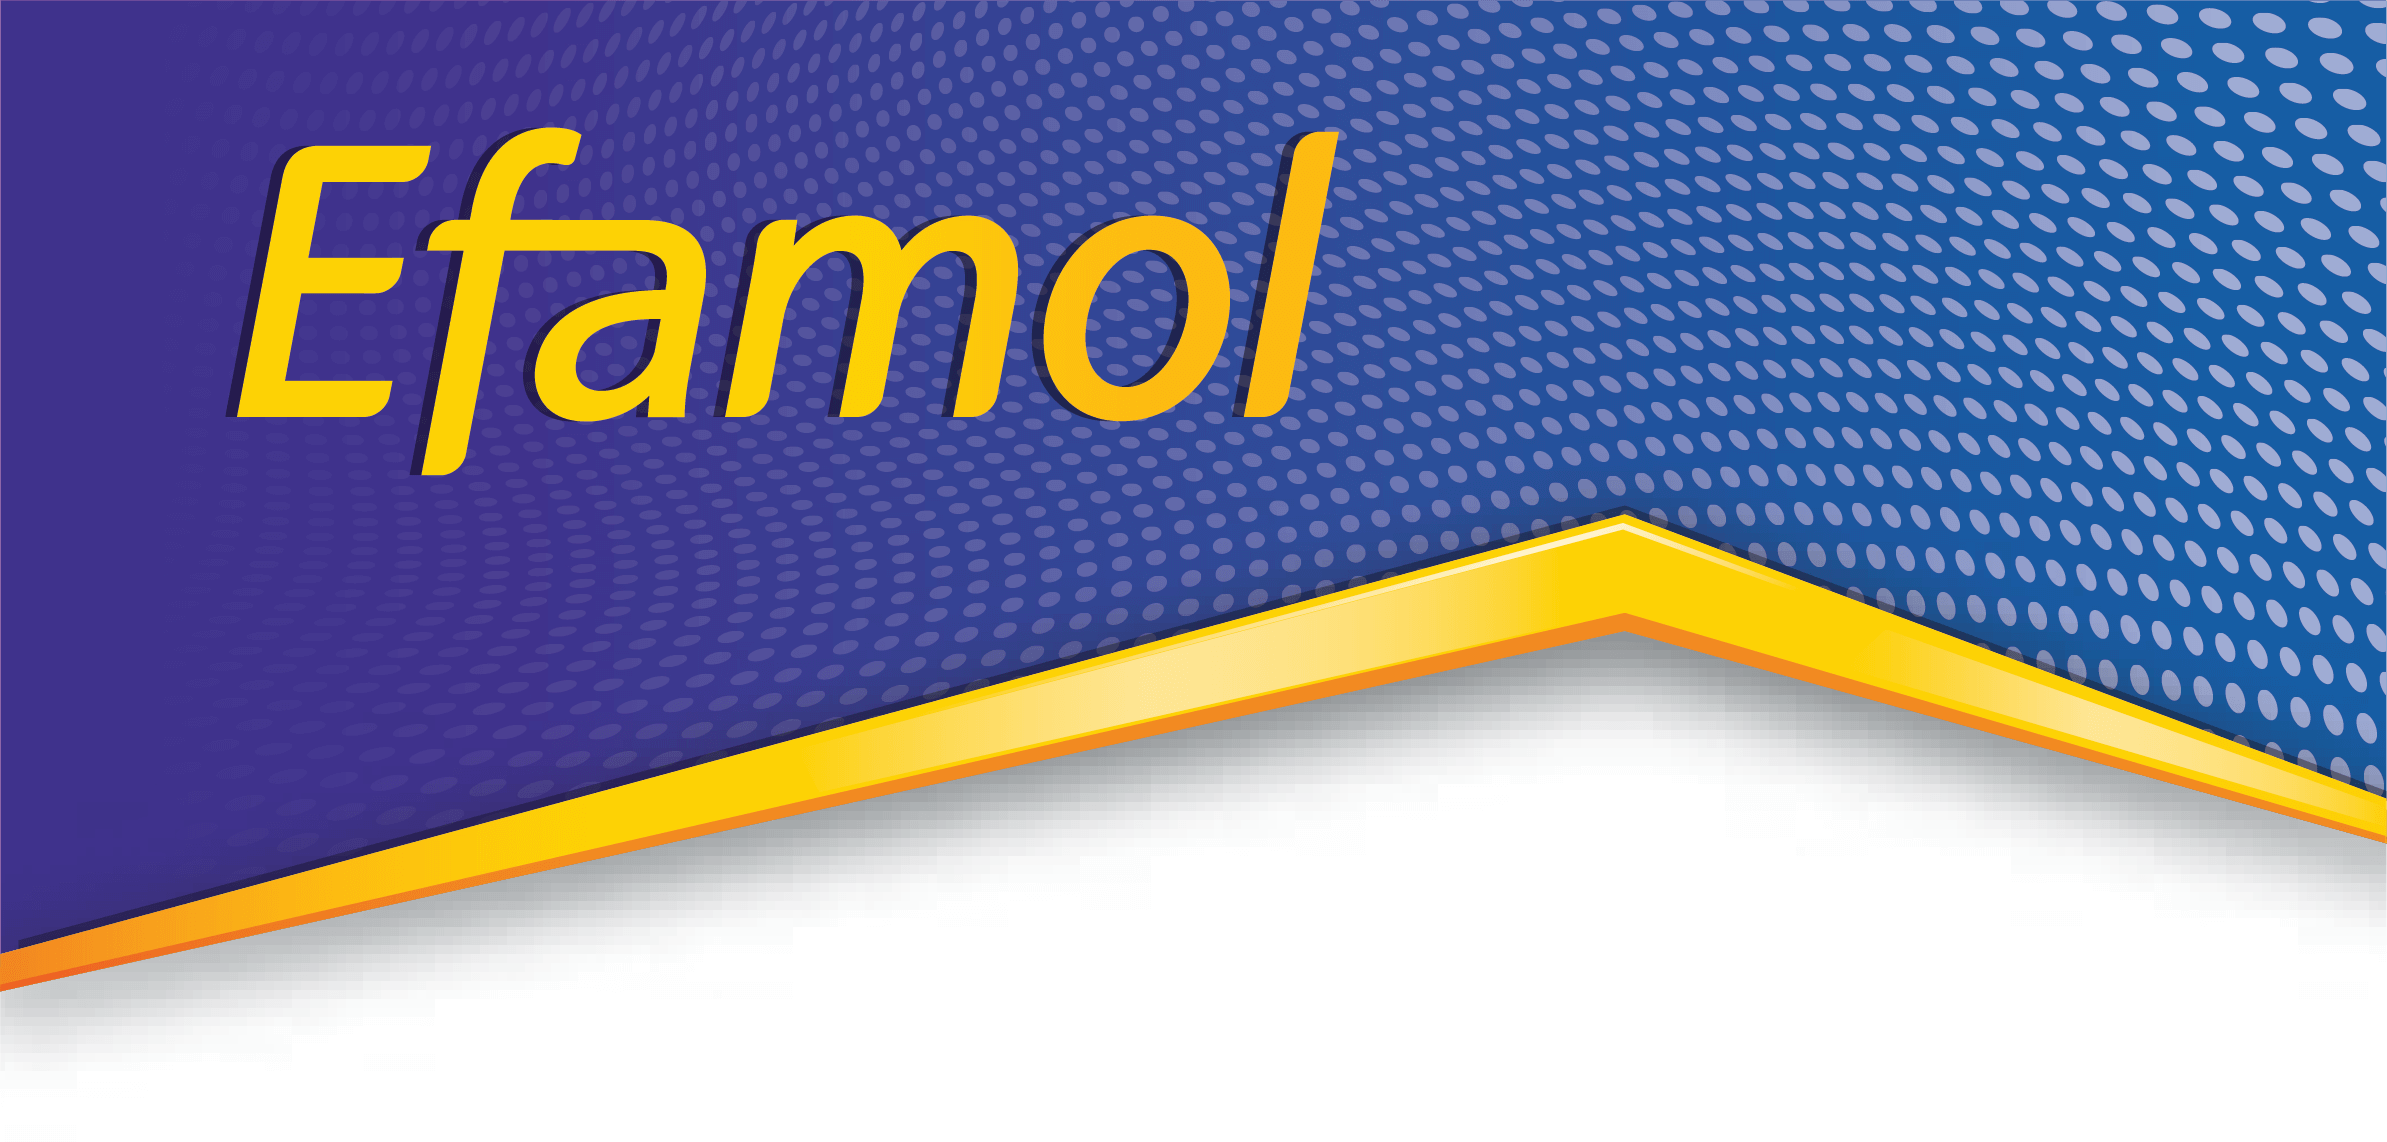 Efamol brand logo